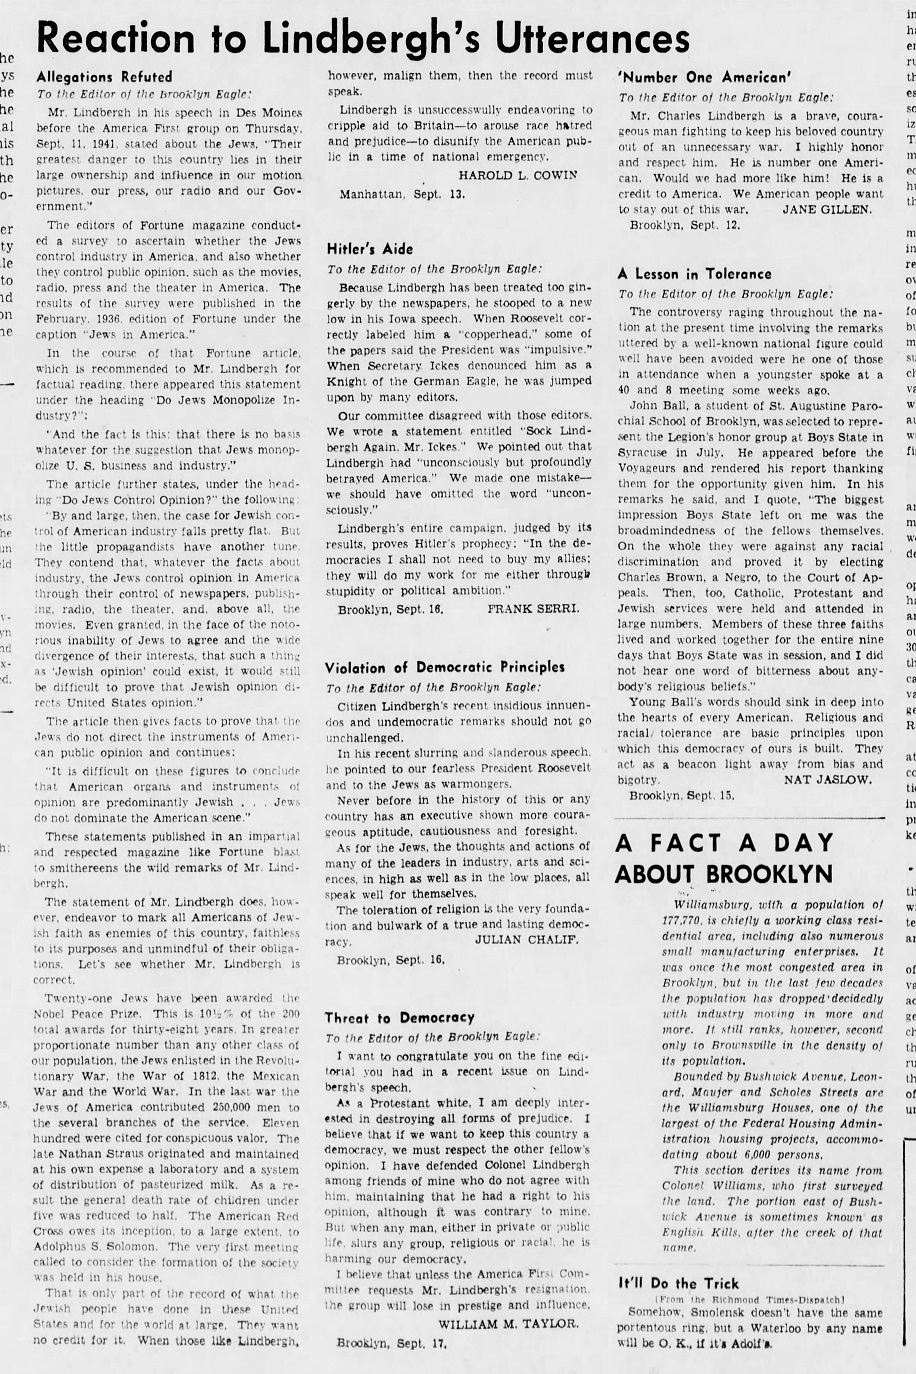 The_Brooklyn_Daily_Eagle_Sun__Sep_21__1941_(2).jpg